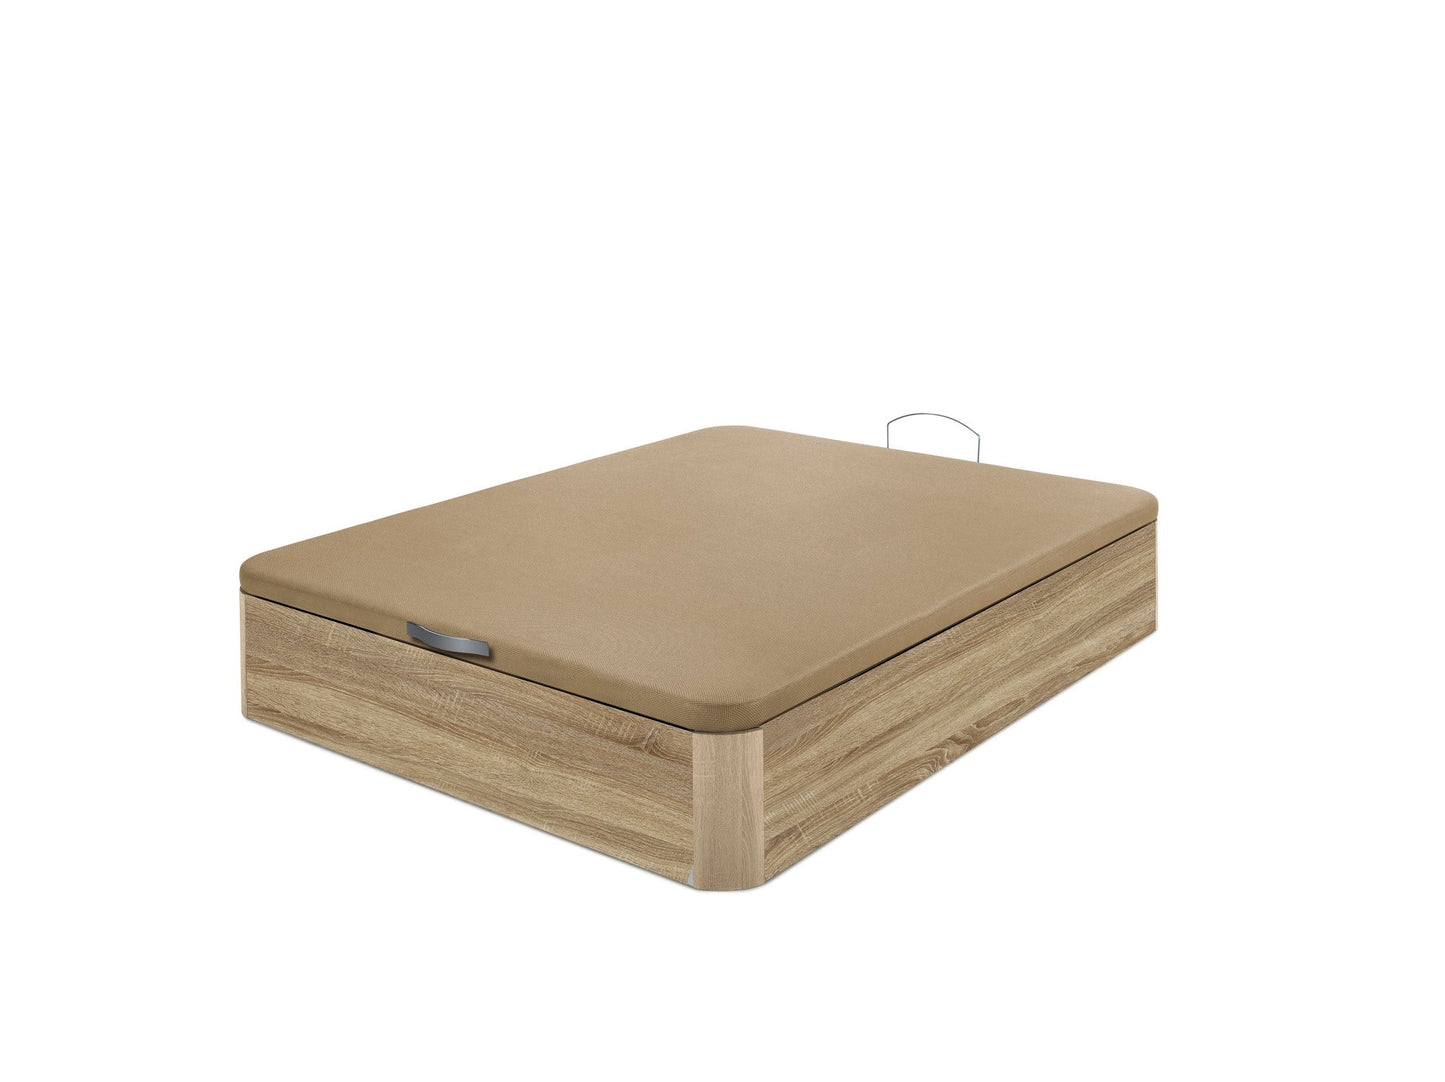 Canapé aus Holz mit hoher Kapazität und Widerstandsfähigkeit | EICHE